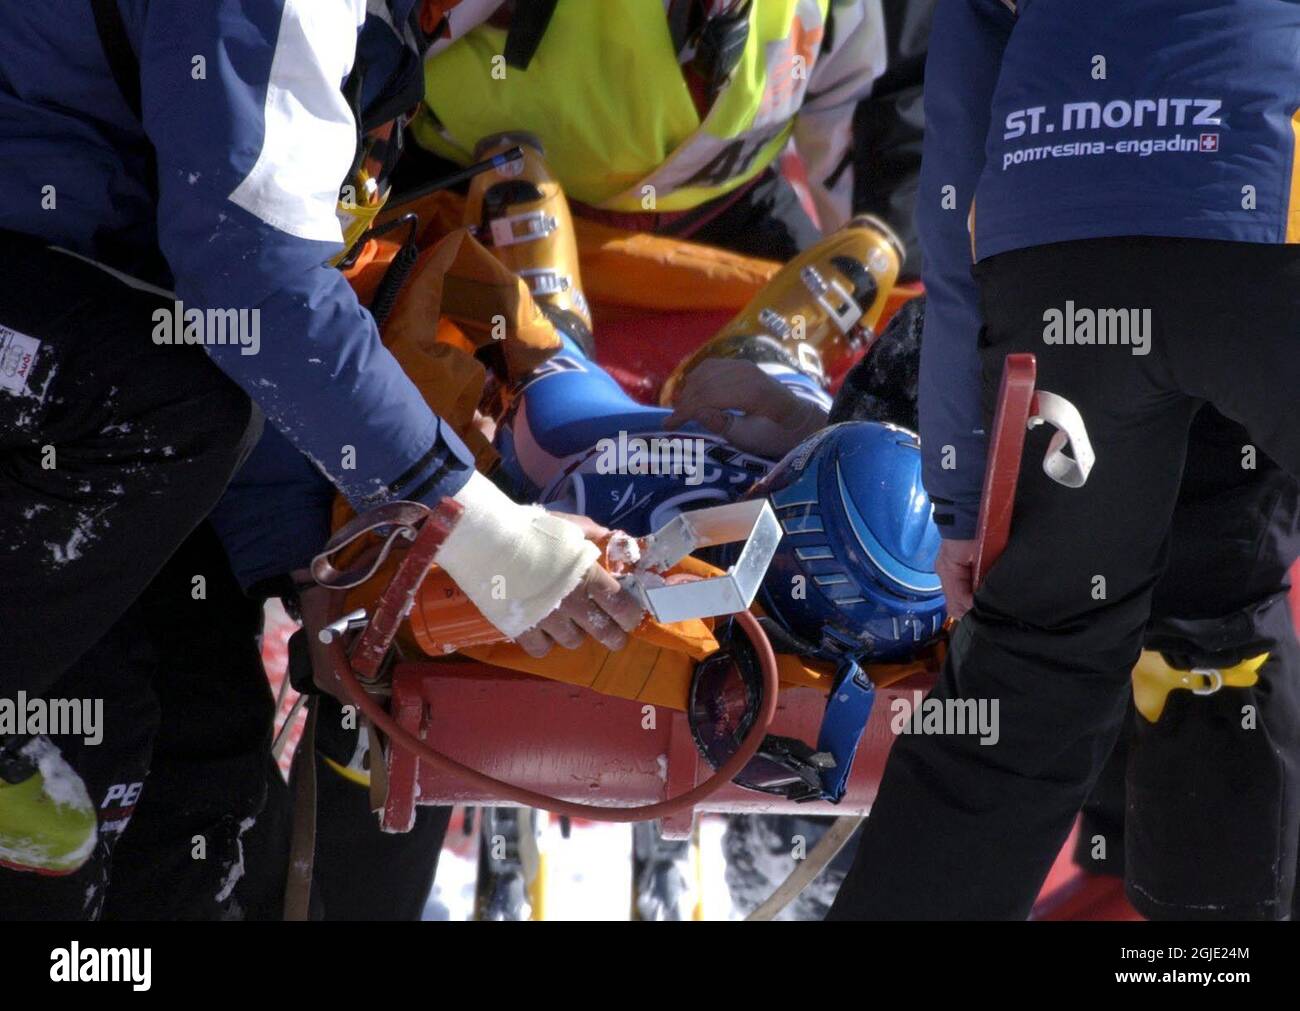 Lucia Recchia, de l'Italie, s'est écrasée dans la clôture après un saut dans la descente des femmes aux Championnats du monde de ski alpin à Saint-Moritz, en Suisse, le 9 février 2003 Banque D'Images